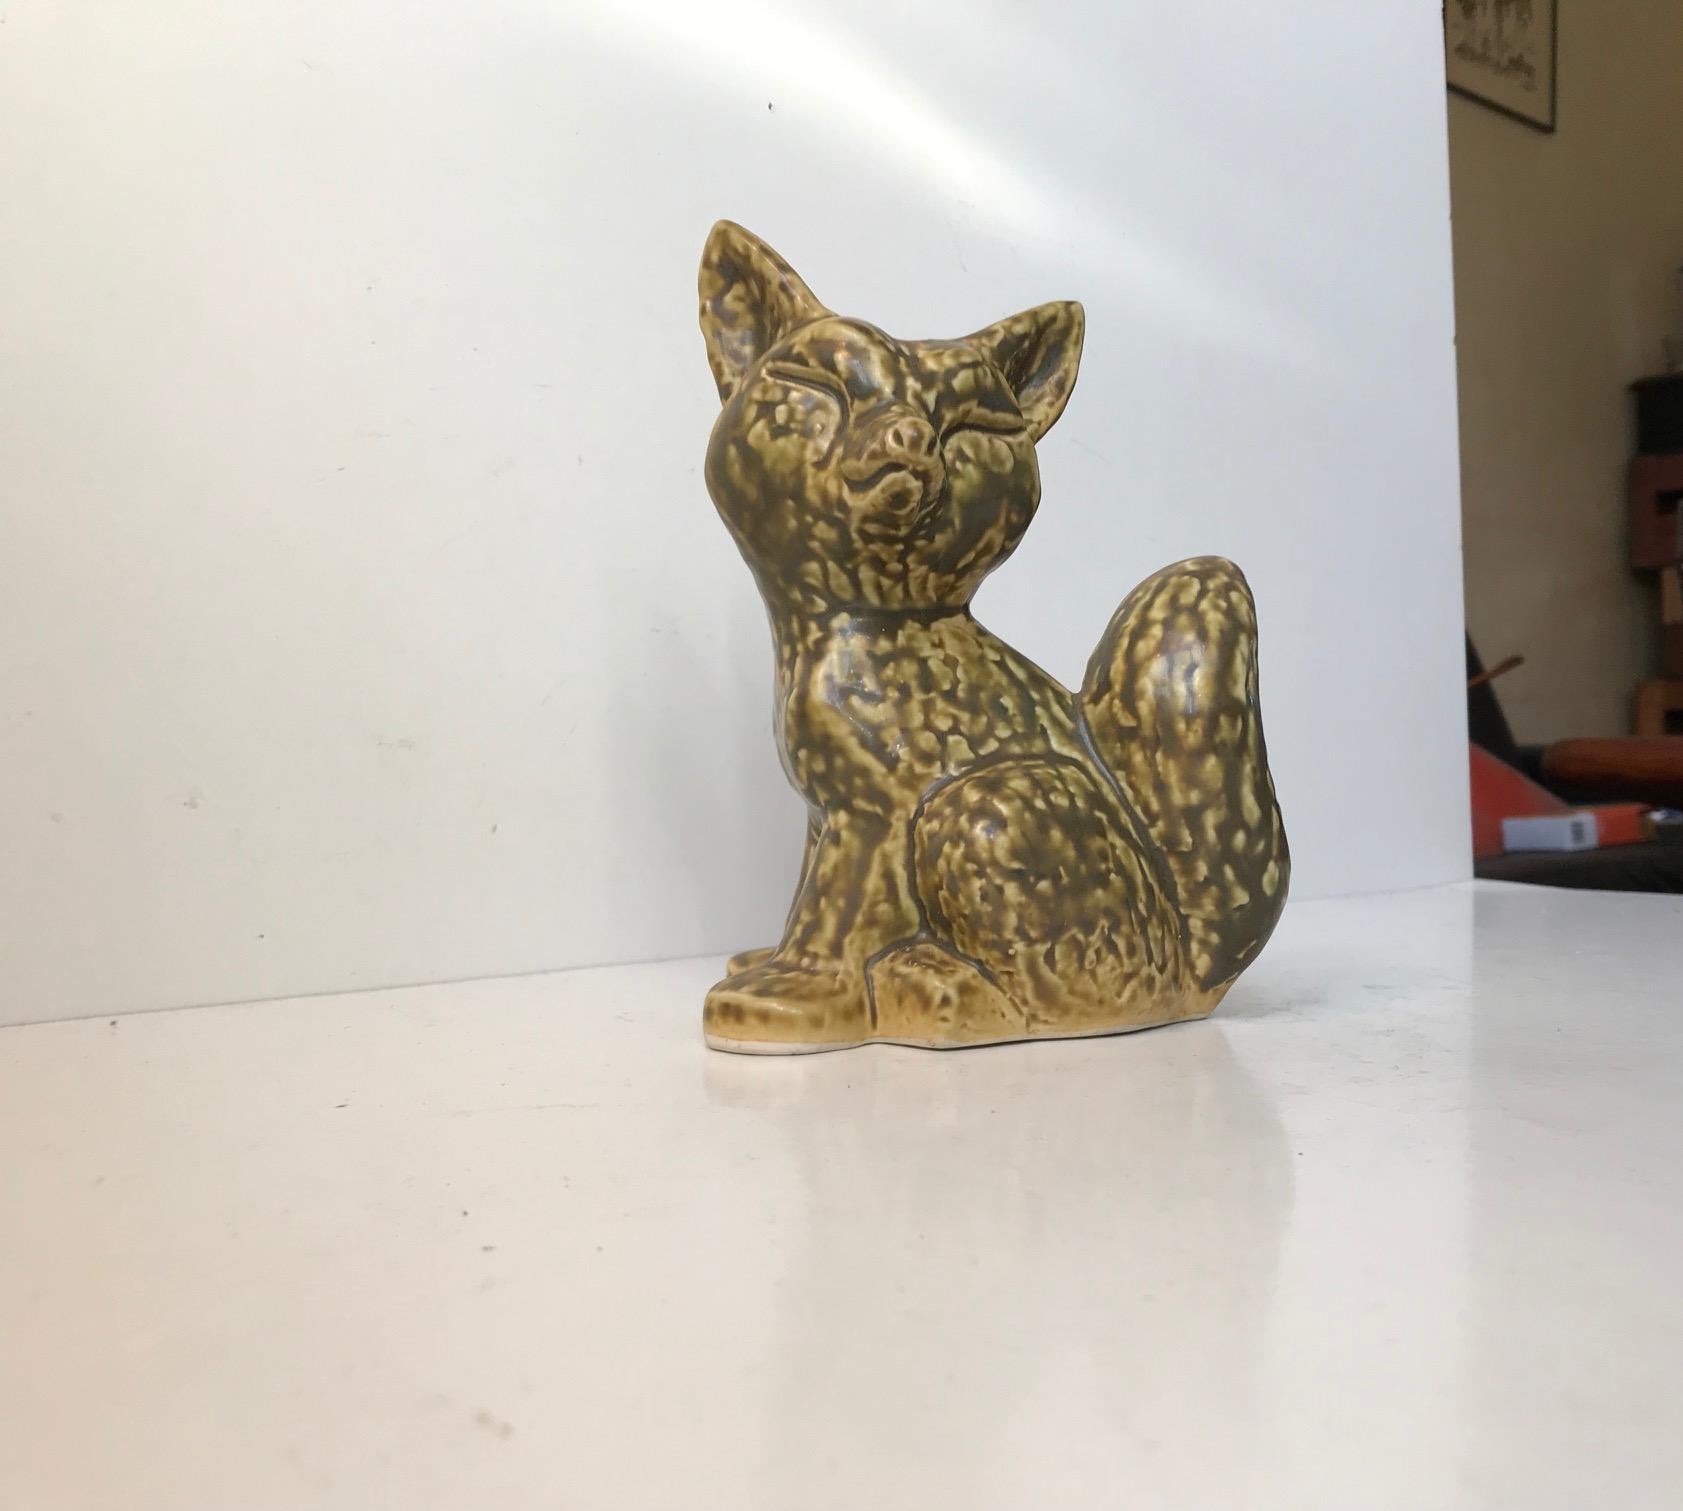 Cette charmante figurine de renard en céramique est recouverte d'une glaçure douce et subtile de couleur vert olive sur un fond jaune pastel. Il a été conçu et fabriqué par Kaare Berven Fjeldsaa's dans son studio, alias KBF, en Norvège dans les